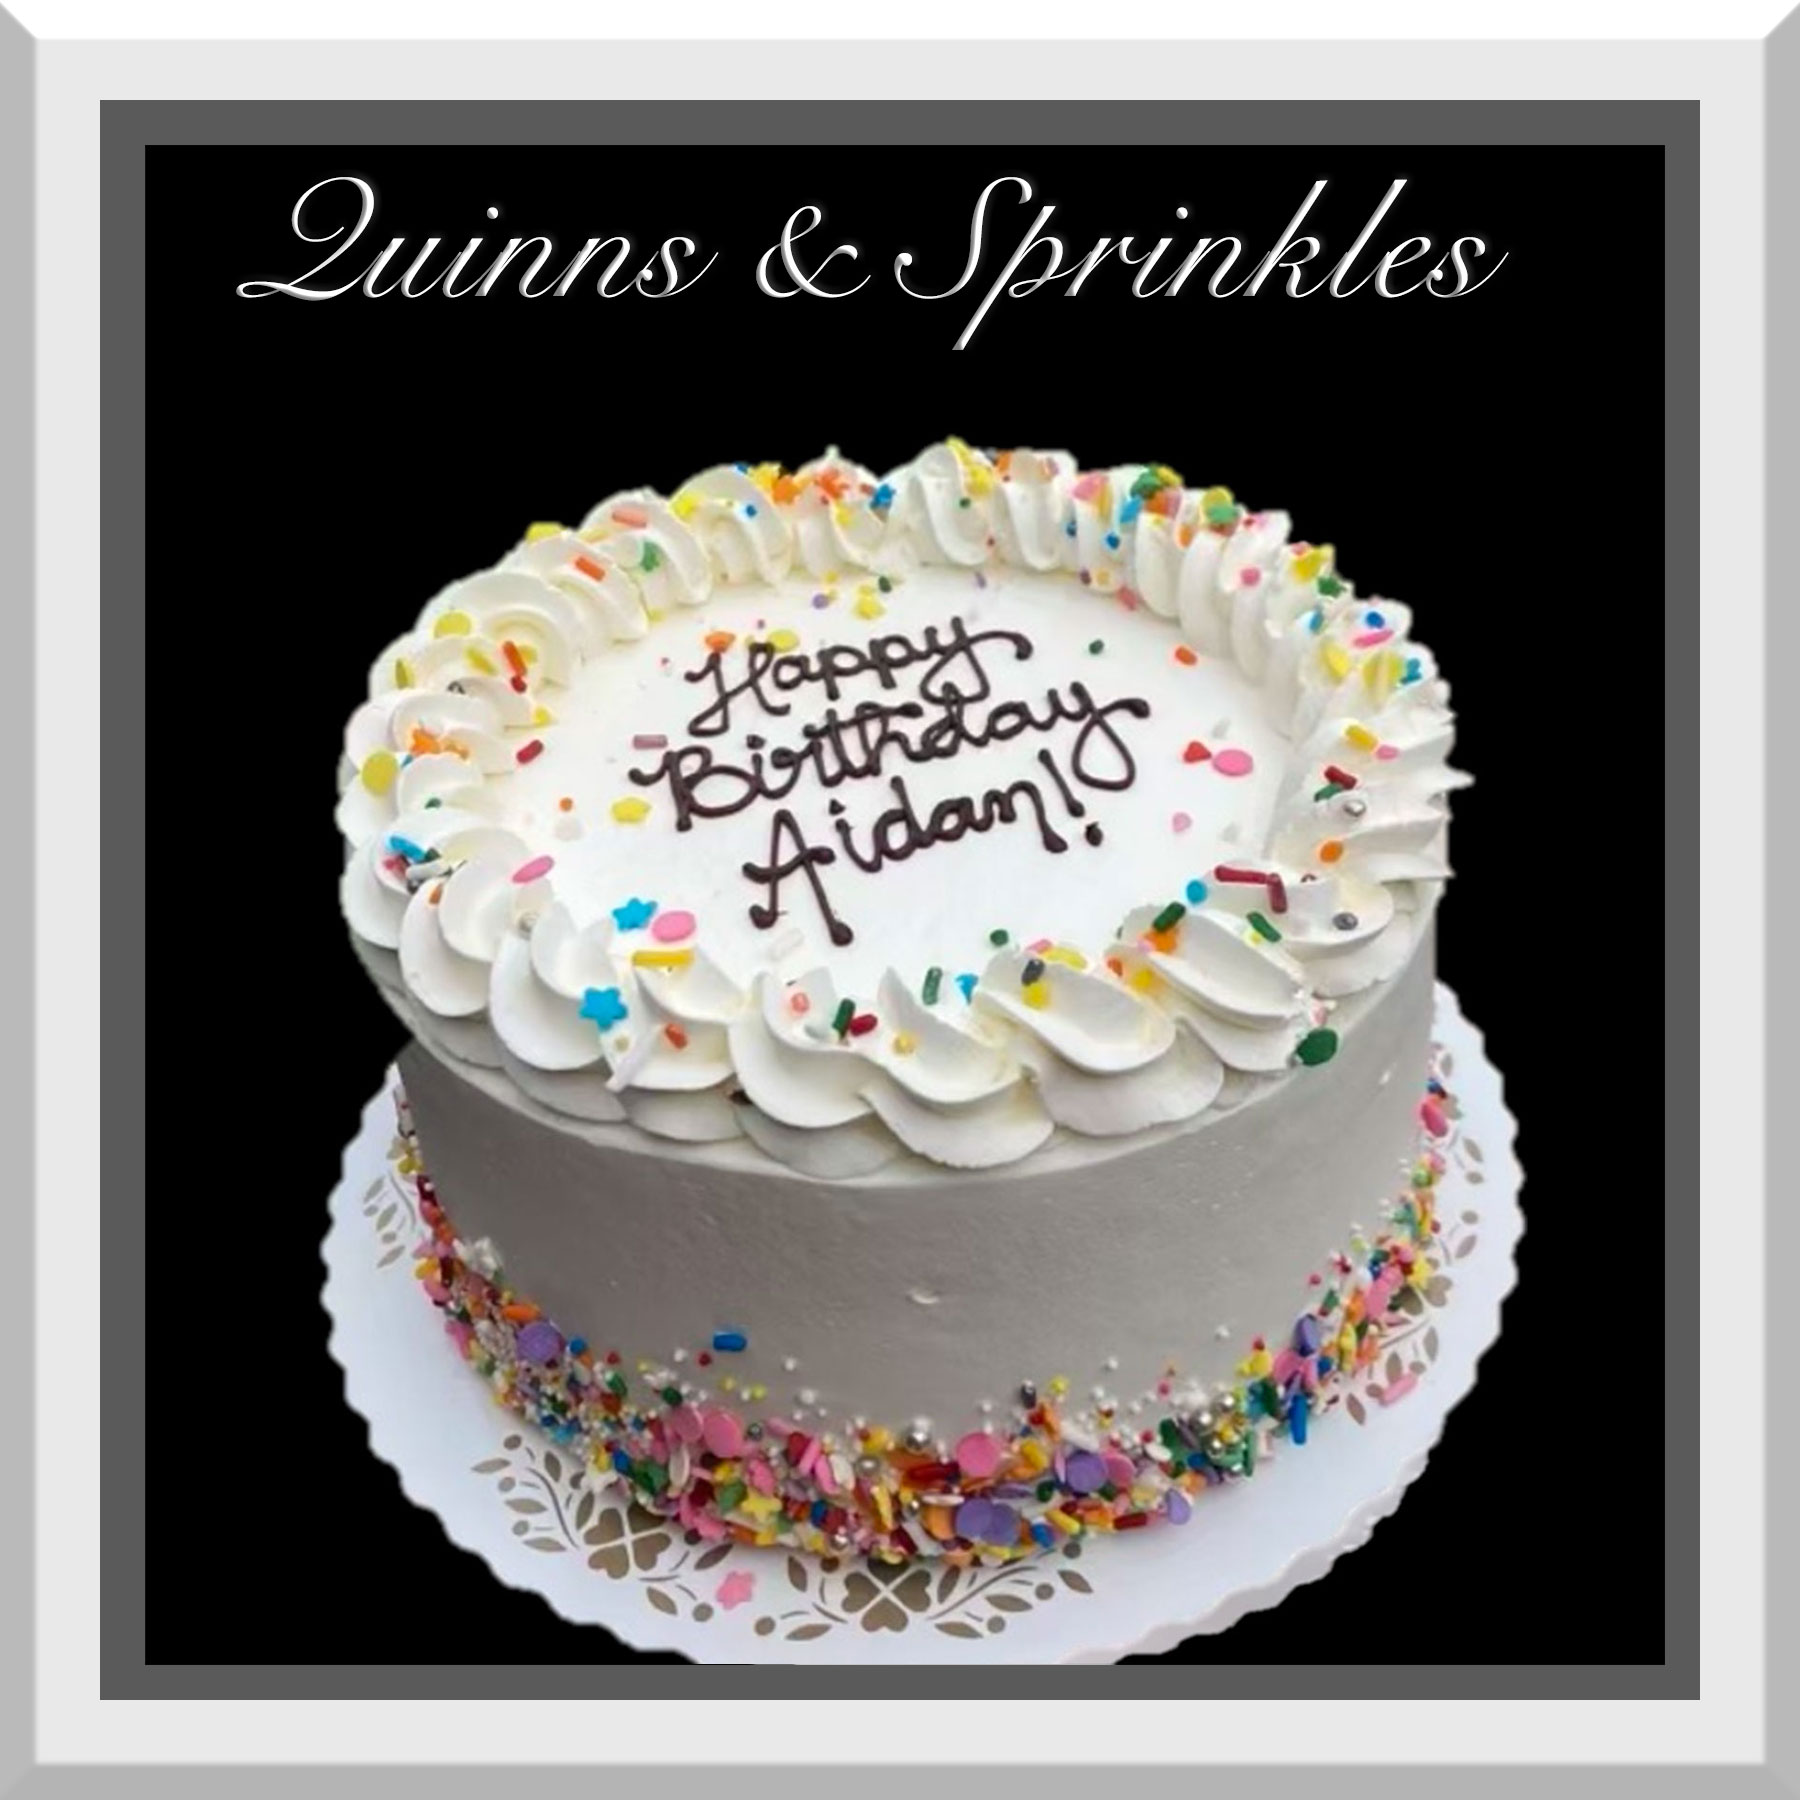 Chocolate sprinkle cake | Simple cake designs, Sprinkles birthday cake,  Chocolate cake designs